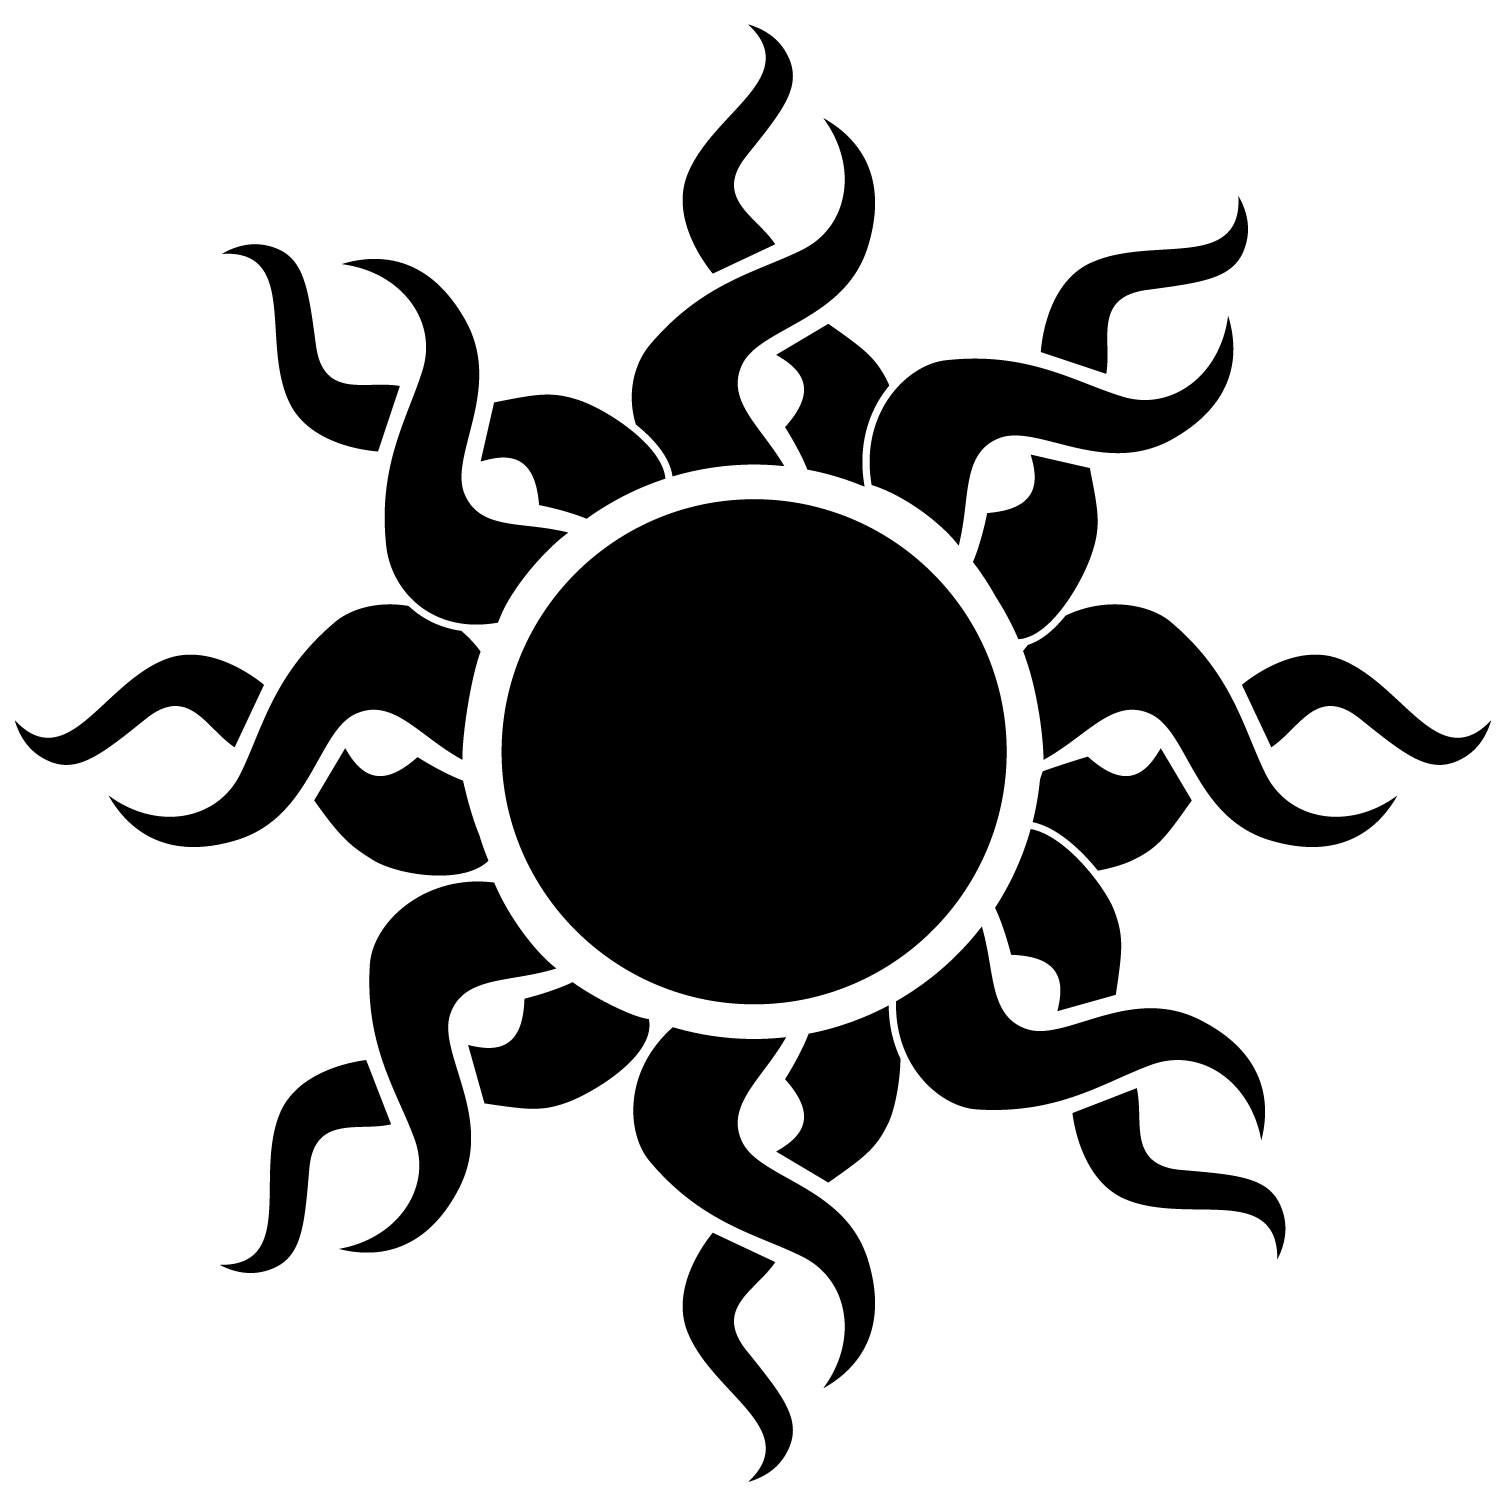 Black tribal sun tattoo design